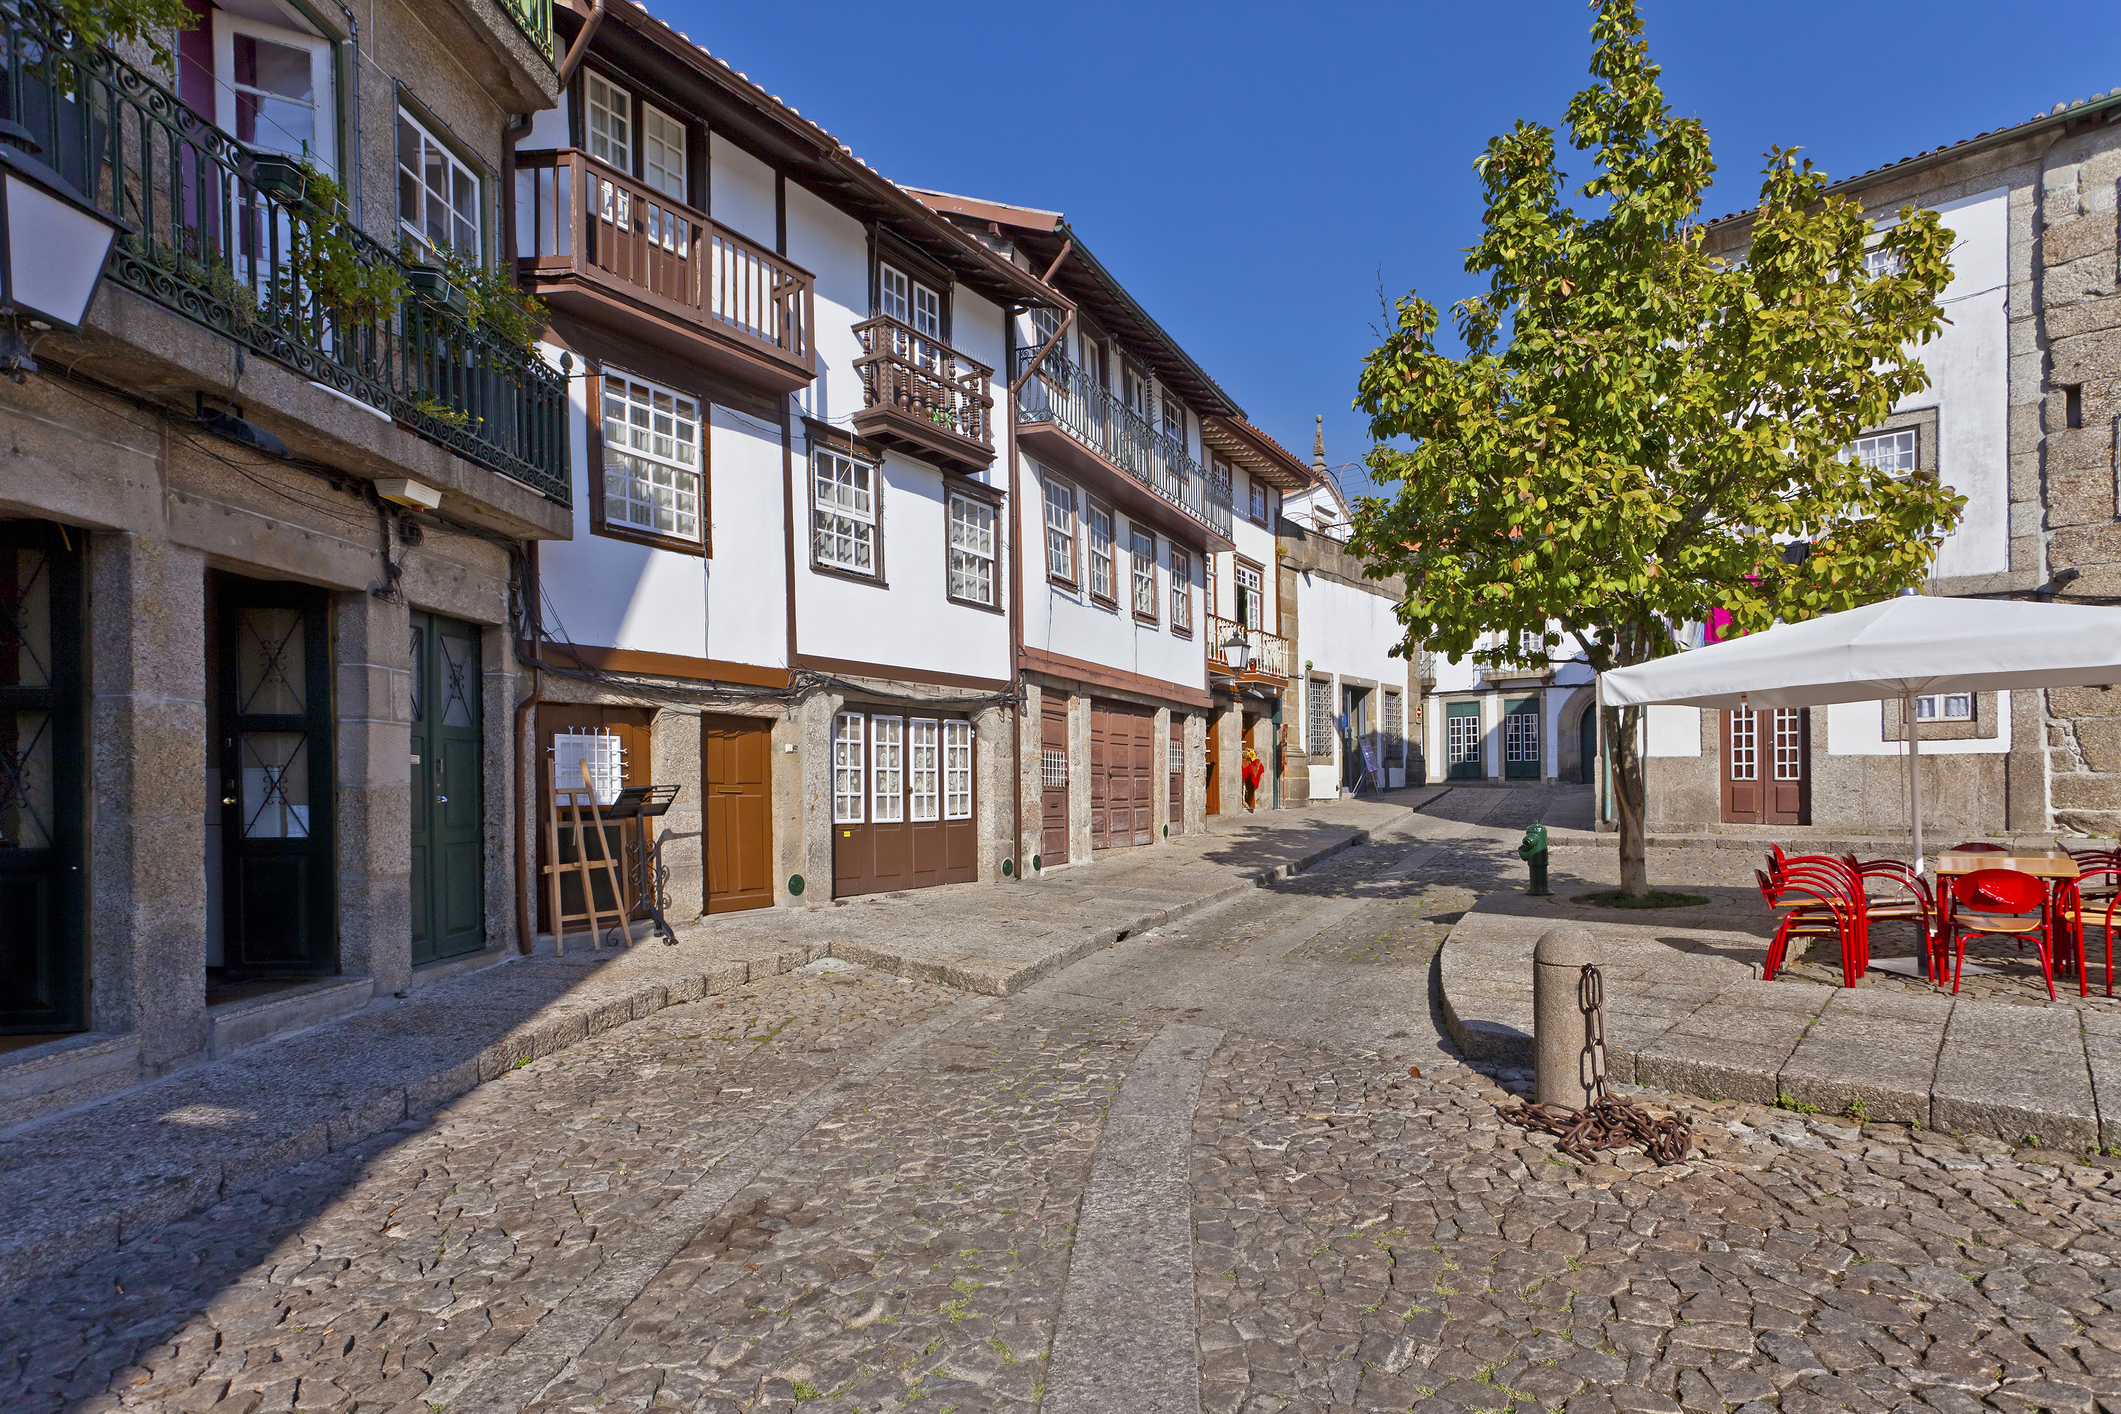 2. Гимараеш, Португалия<br />
Малки прохладни улички, уютни кафенета и сладката тъга на португалската музика. В Гимараеш можеш да се насладиш на бавната, вкусна и слънчева страна на живота.